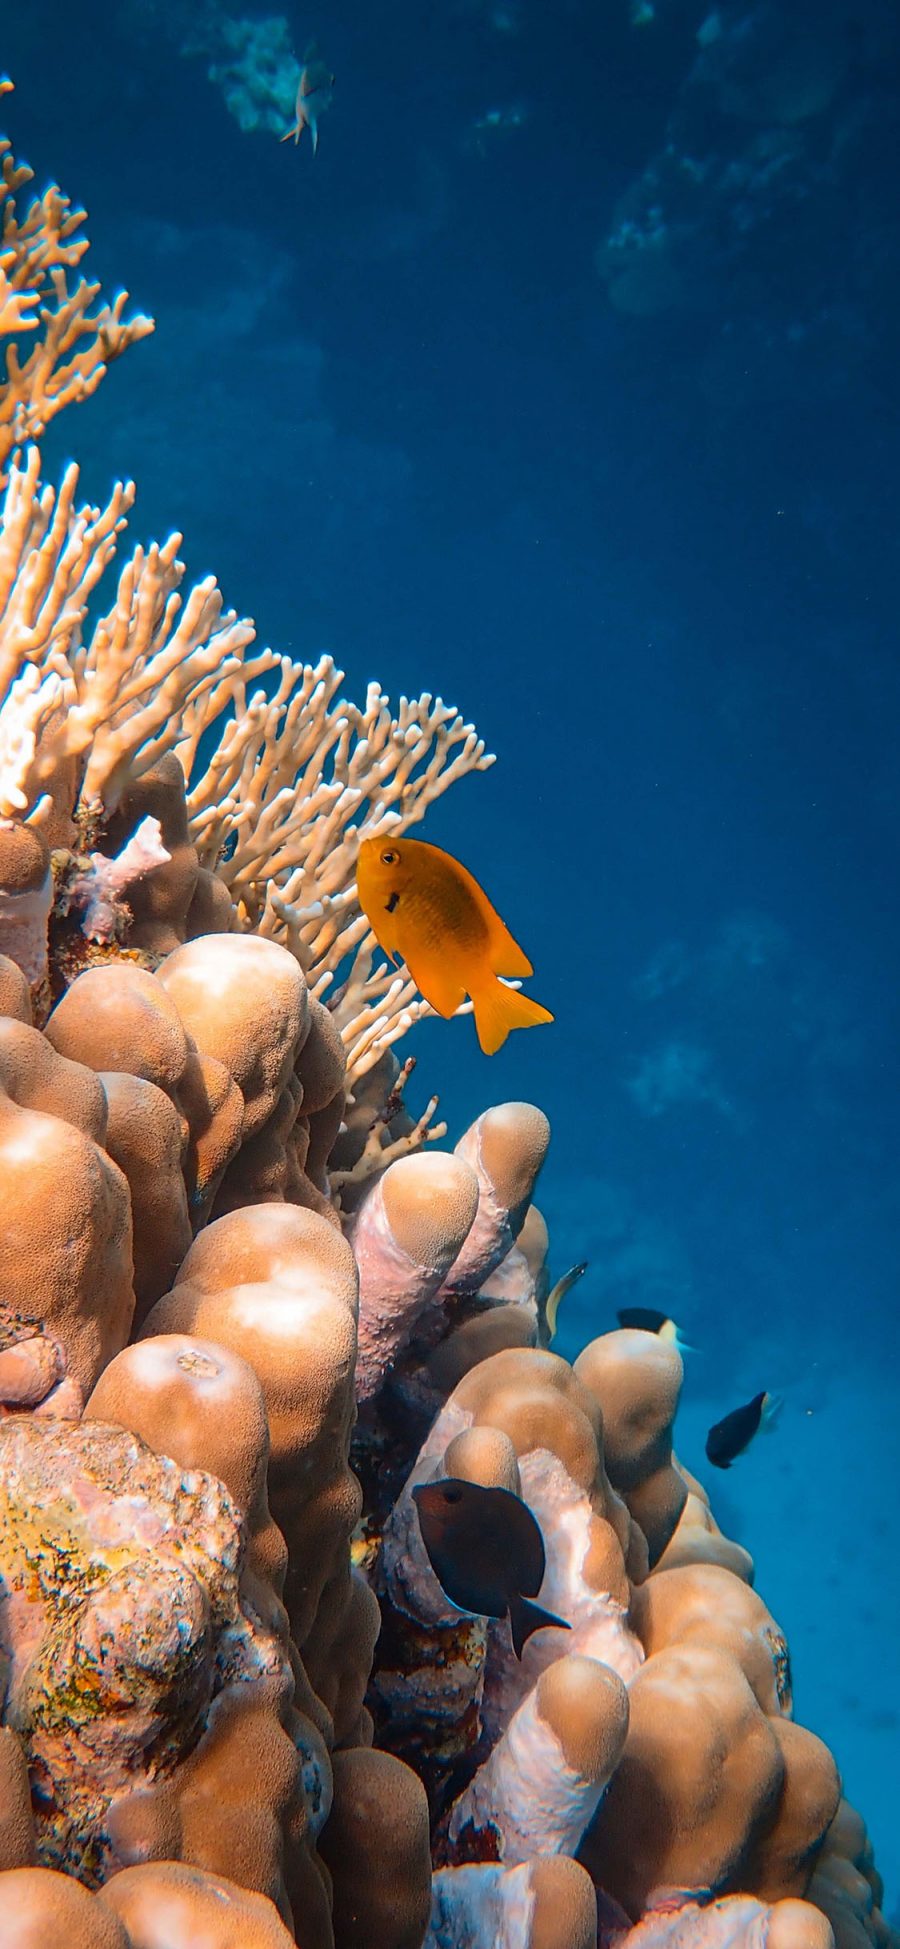 [2436×1125]珊瑚虫 珊瑚 海洋 大海 鱼类 苹果手机壁纸图片